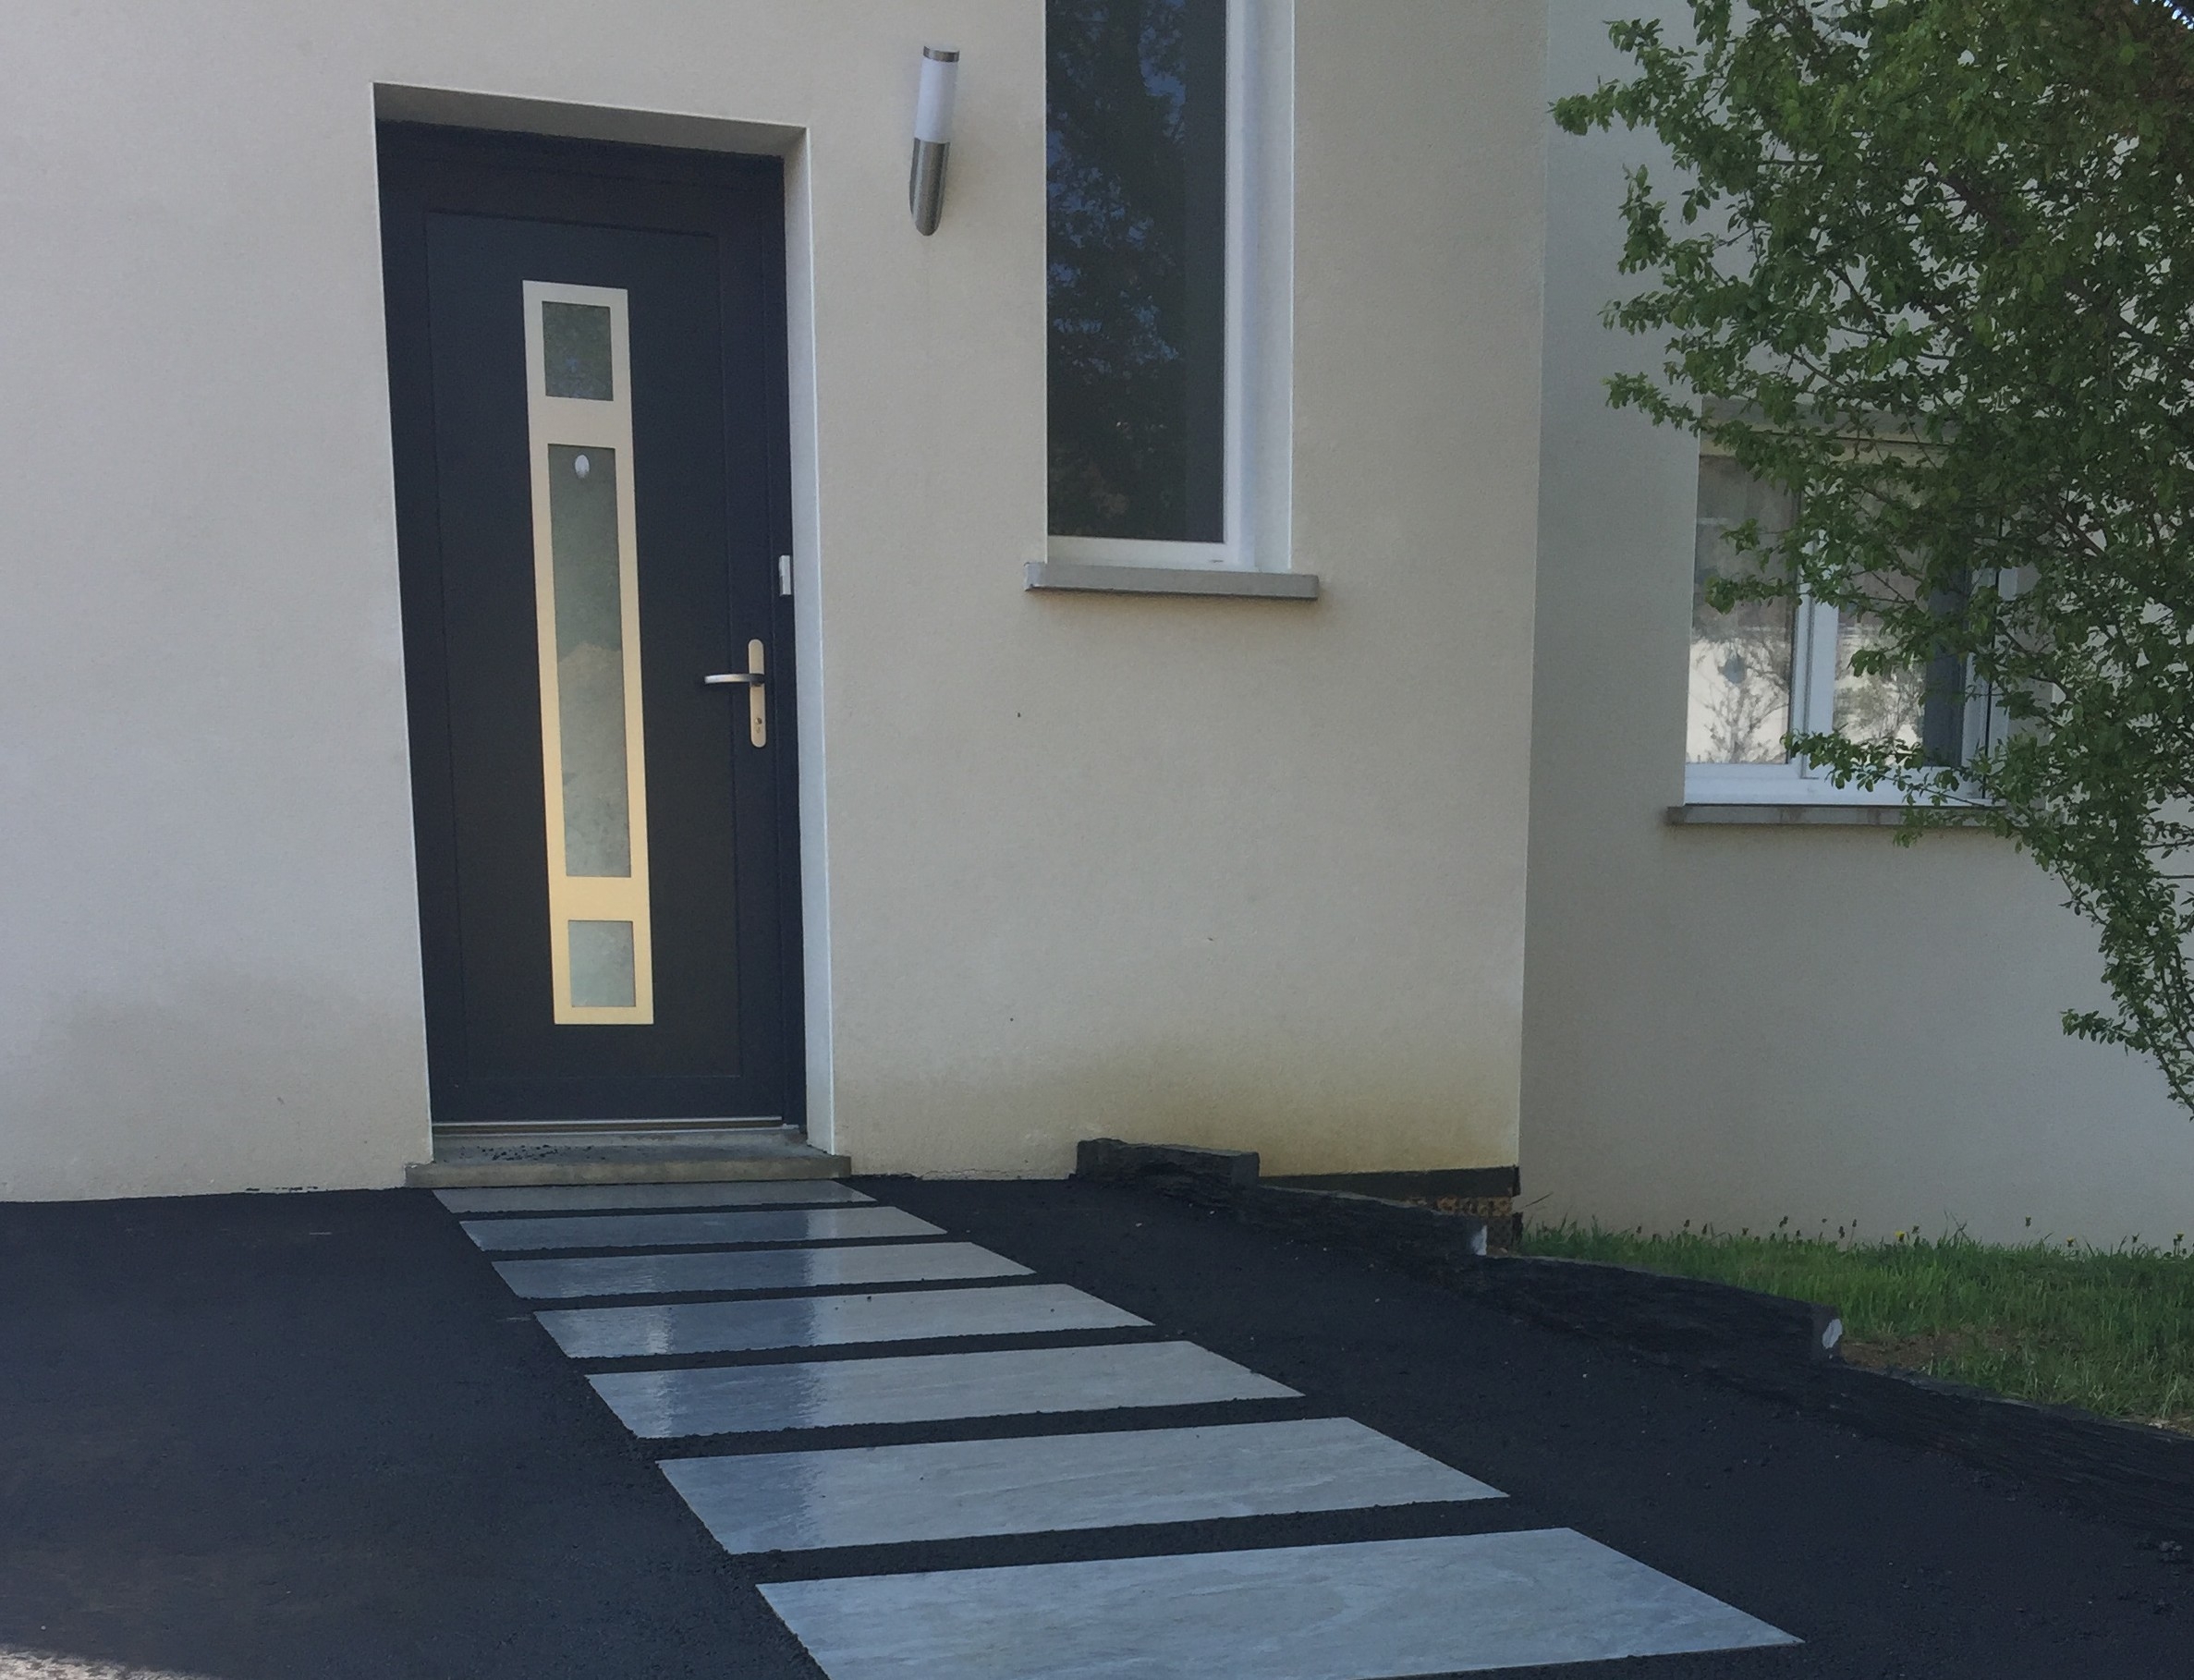 Ralisation Entre de maison en Dallage et enrob noir  chaud - Meurthe-et-Moselle cre le 16/05/2019